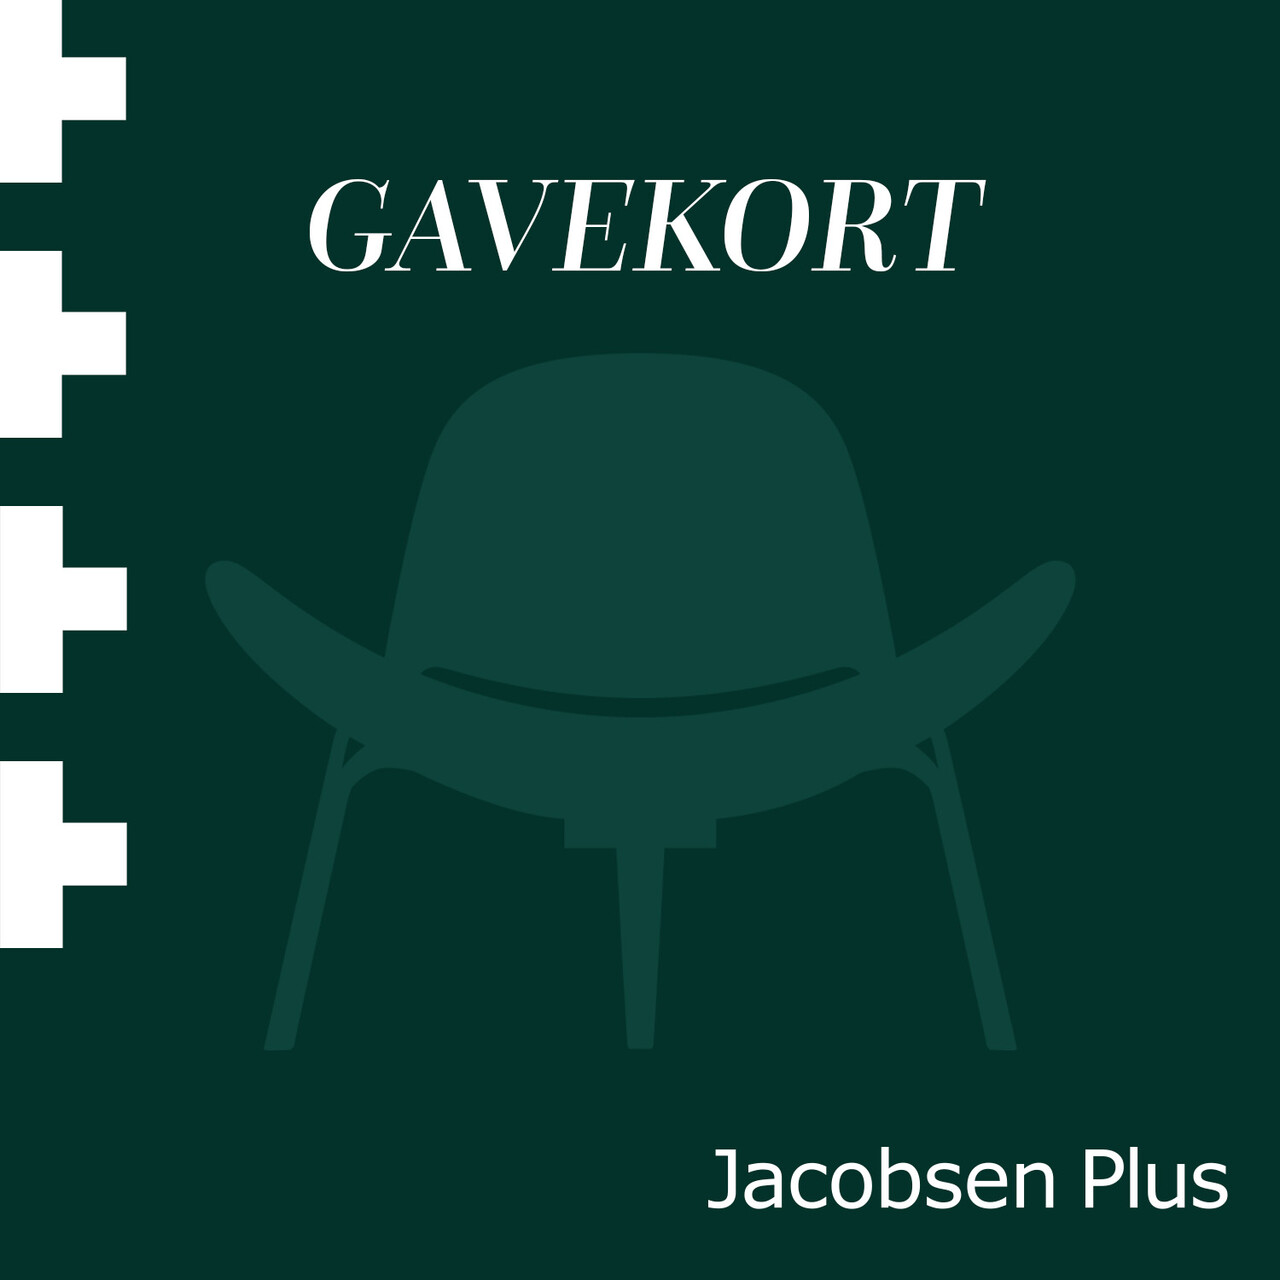 Elektronisk gavekort til Jacobsen Plus (5000)